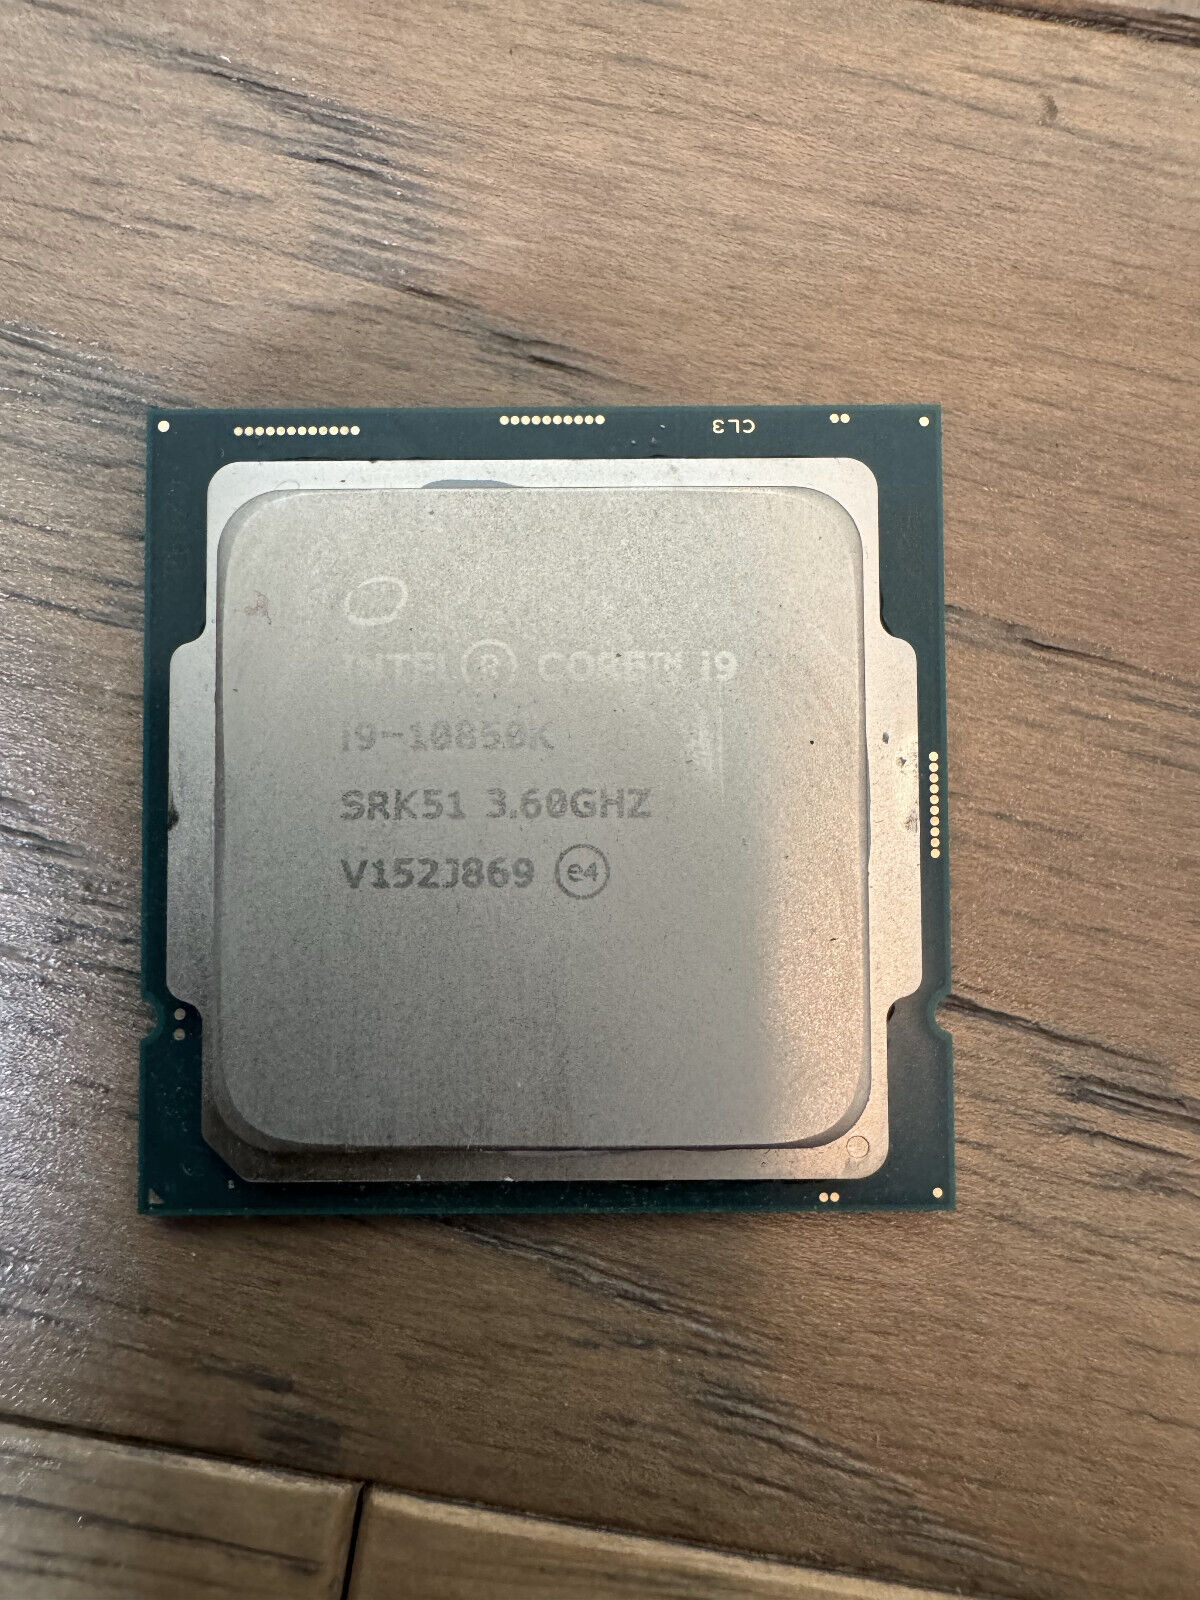 Intel Core i9-10850K (SRK51) 10-Cores 3.6GHz Socket LGA1200 CPU Processor